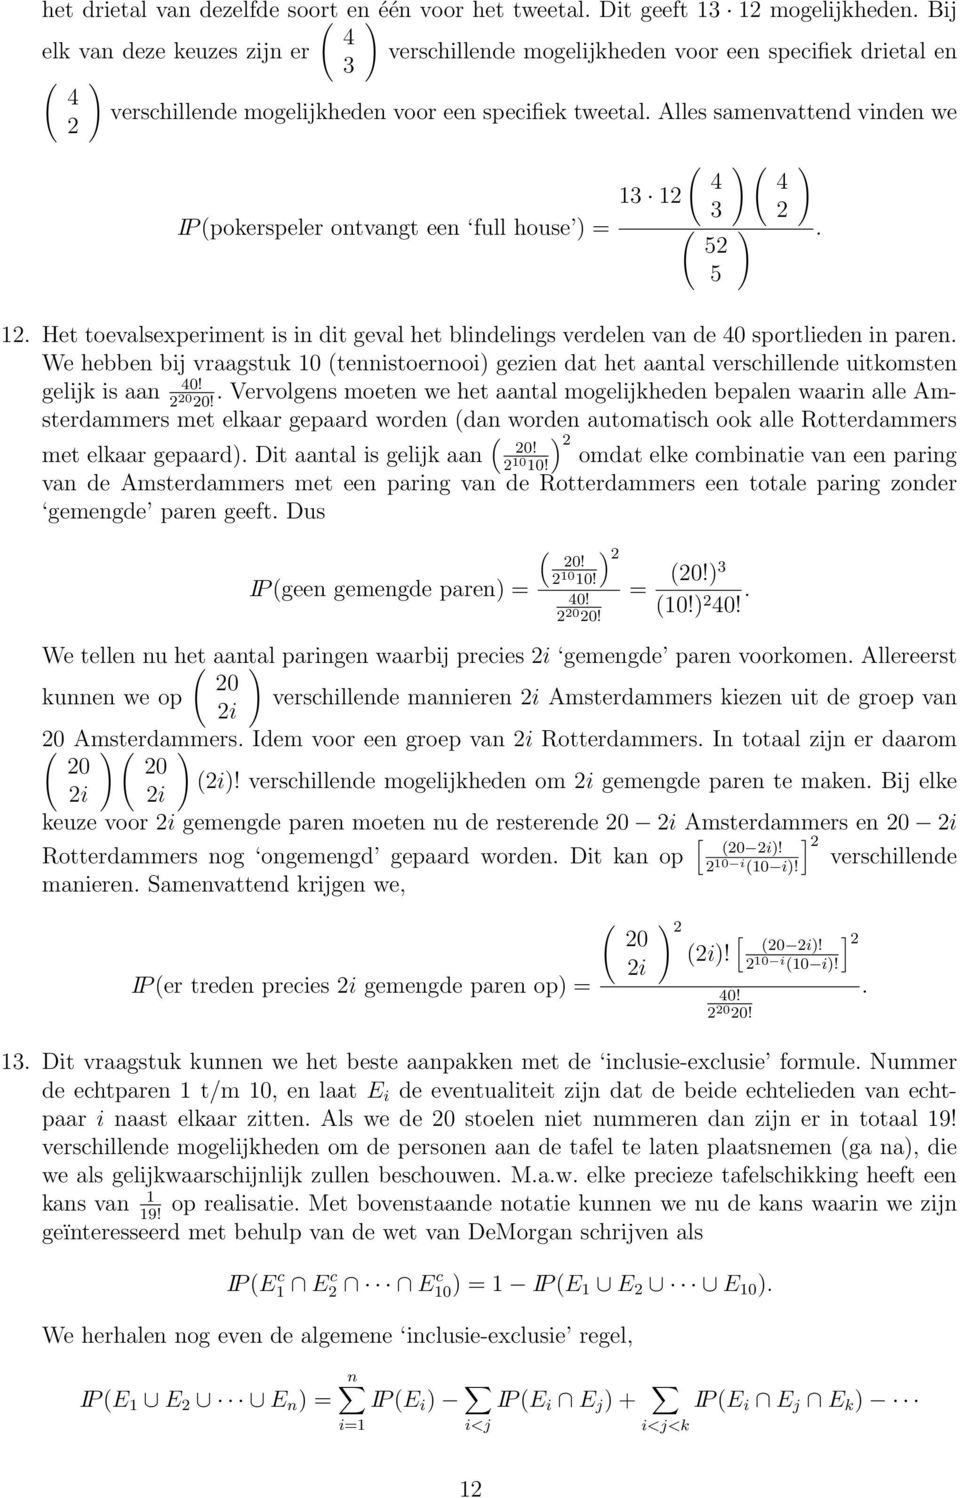 vraagstuk 0 teistoerooi gezie dat het aatal verschillede uitkomste gelijk is aa 40!